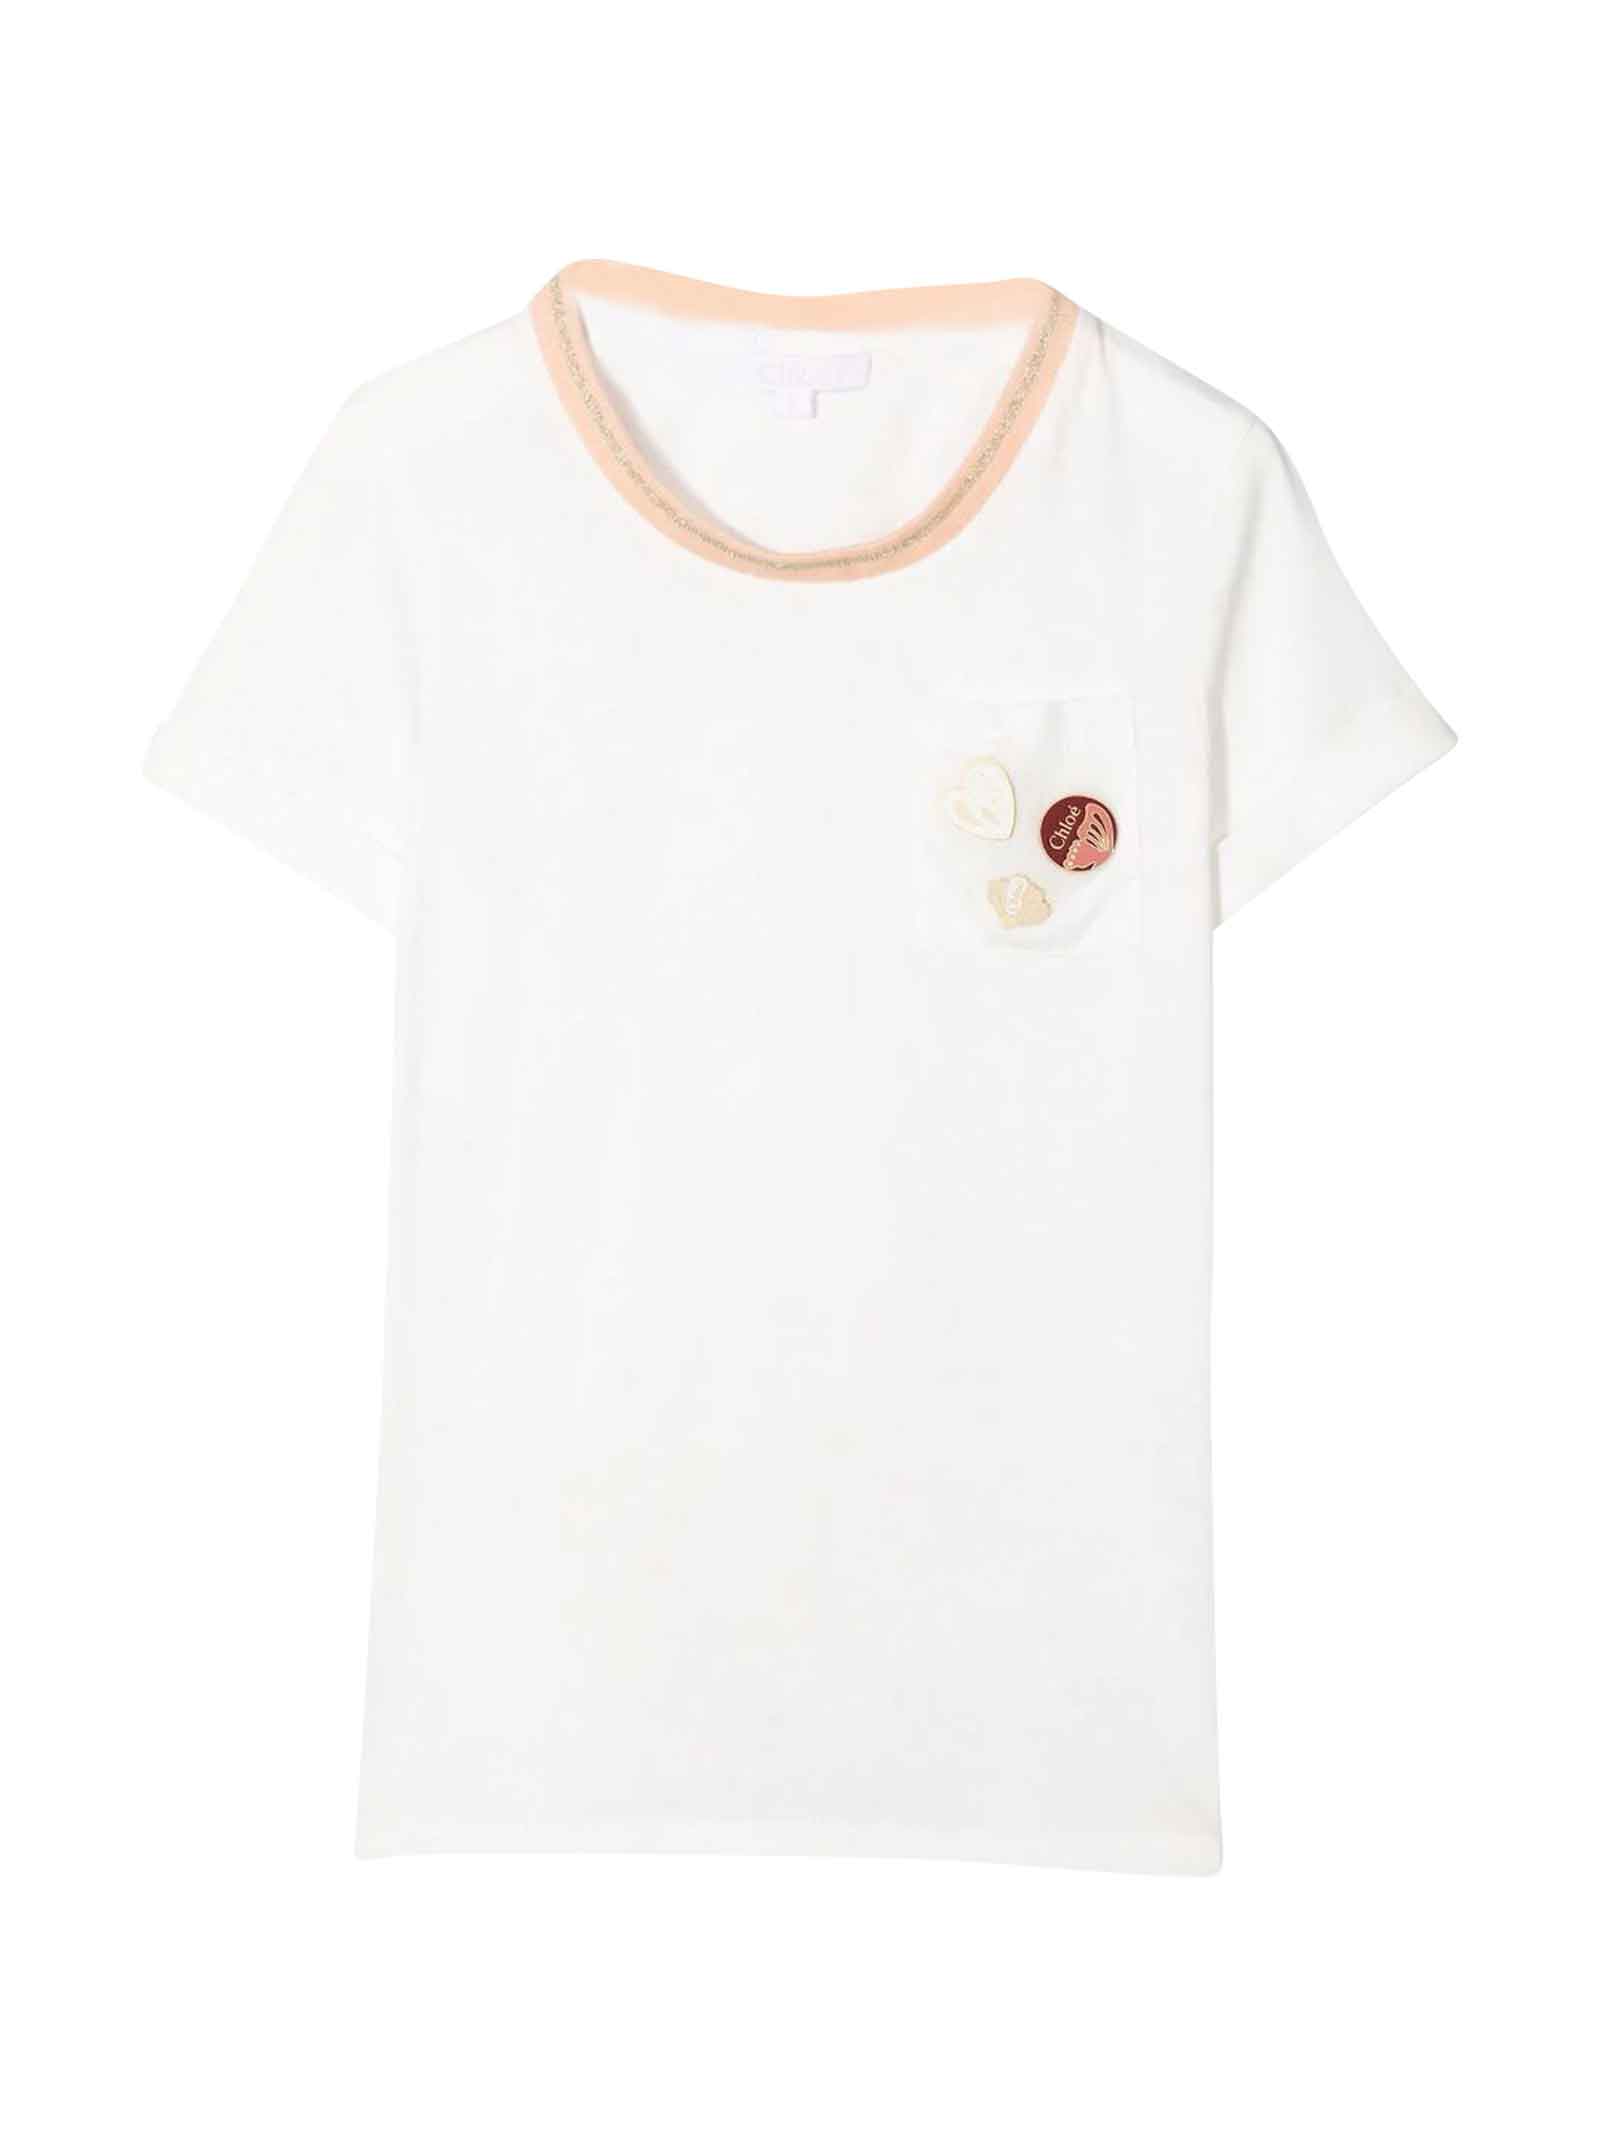 Chloé White Chloé Kids Girl T-shirt